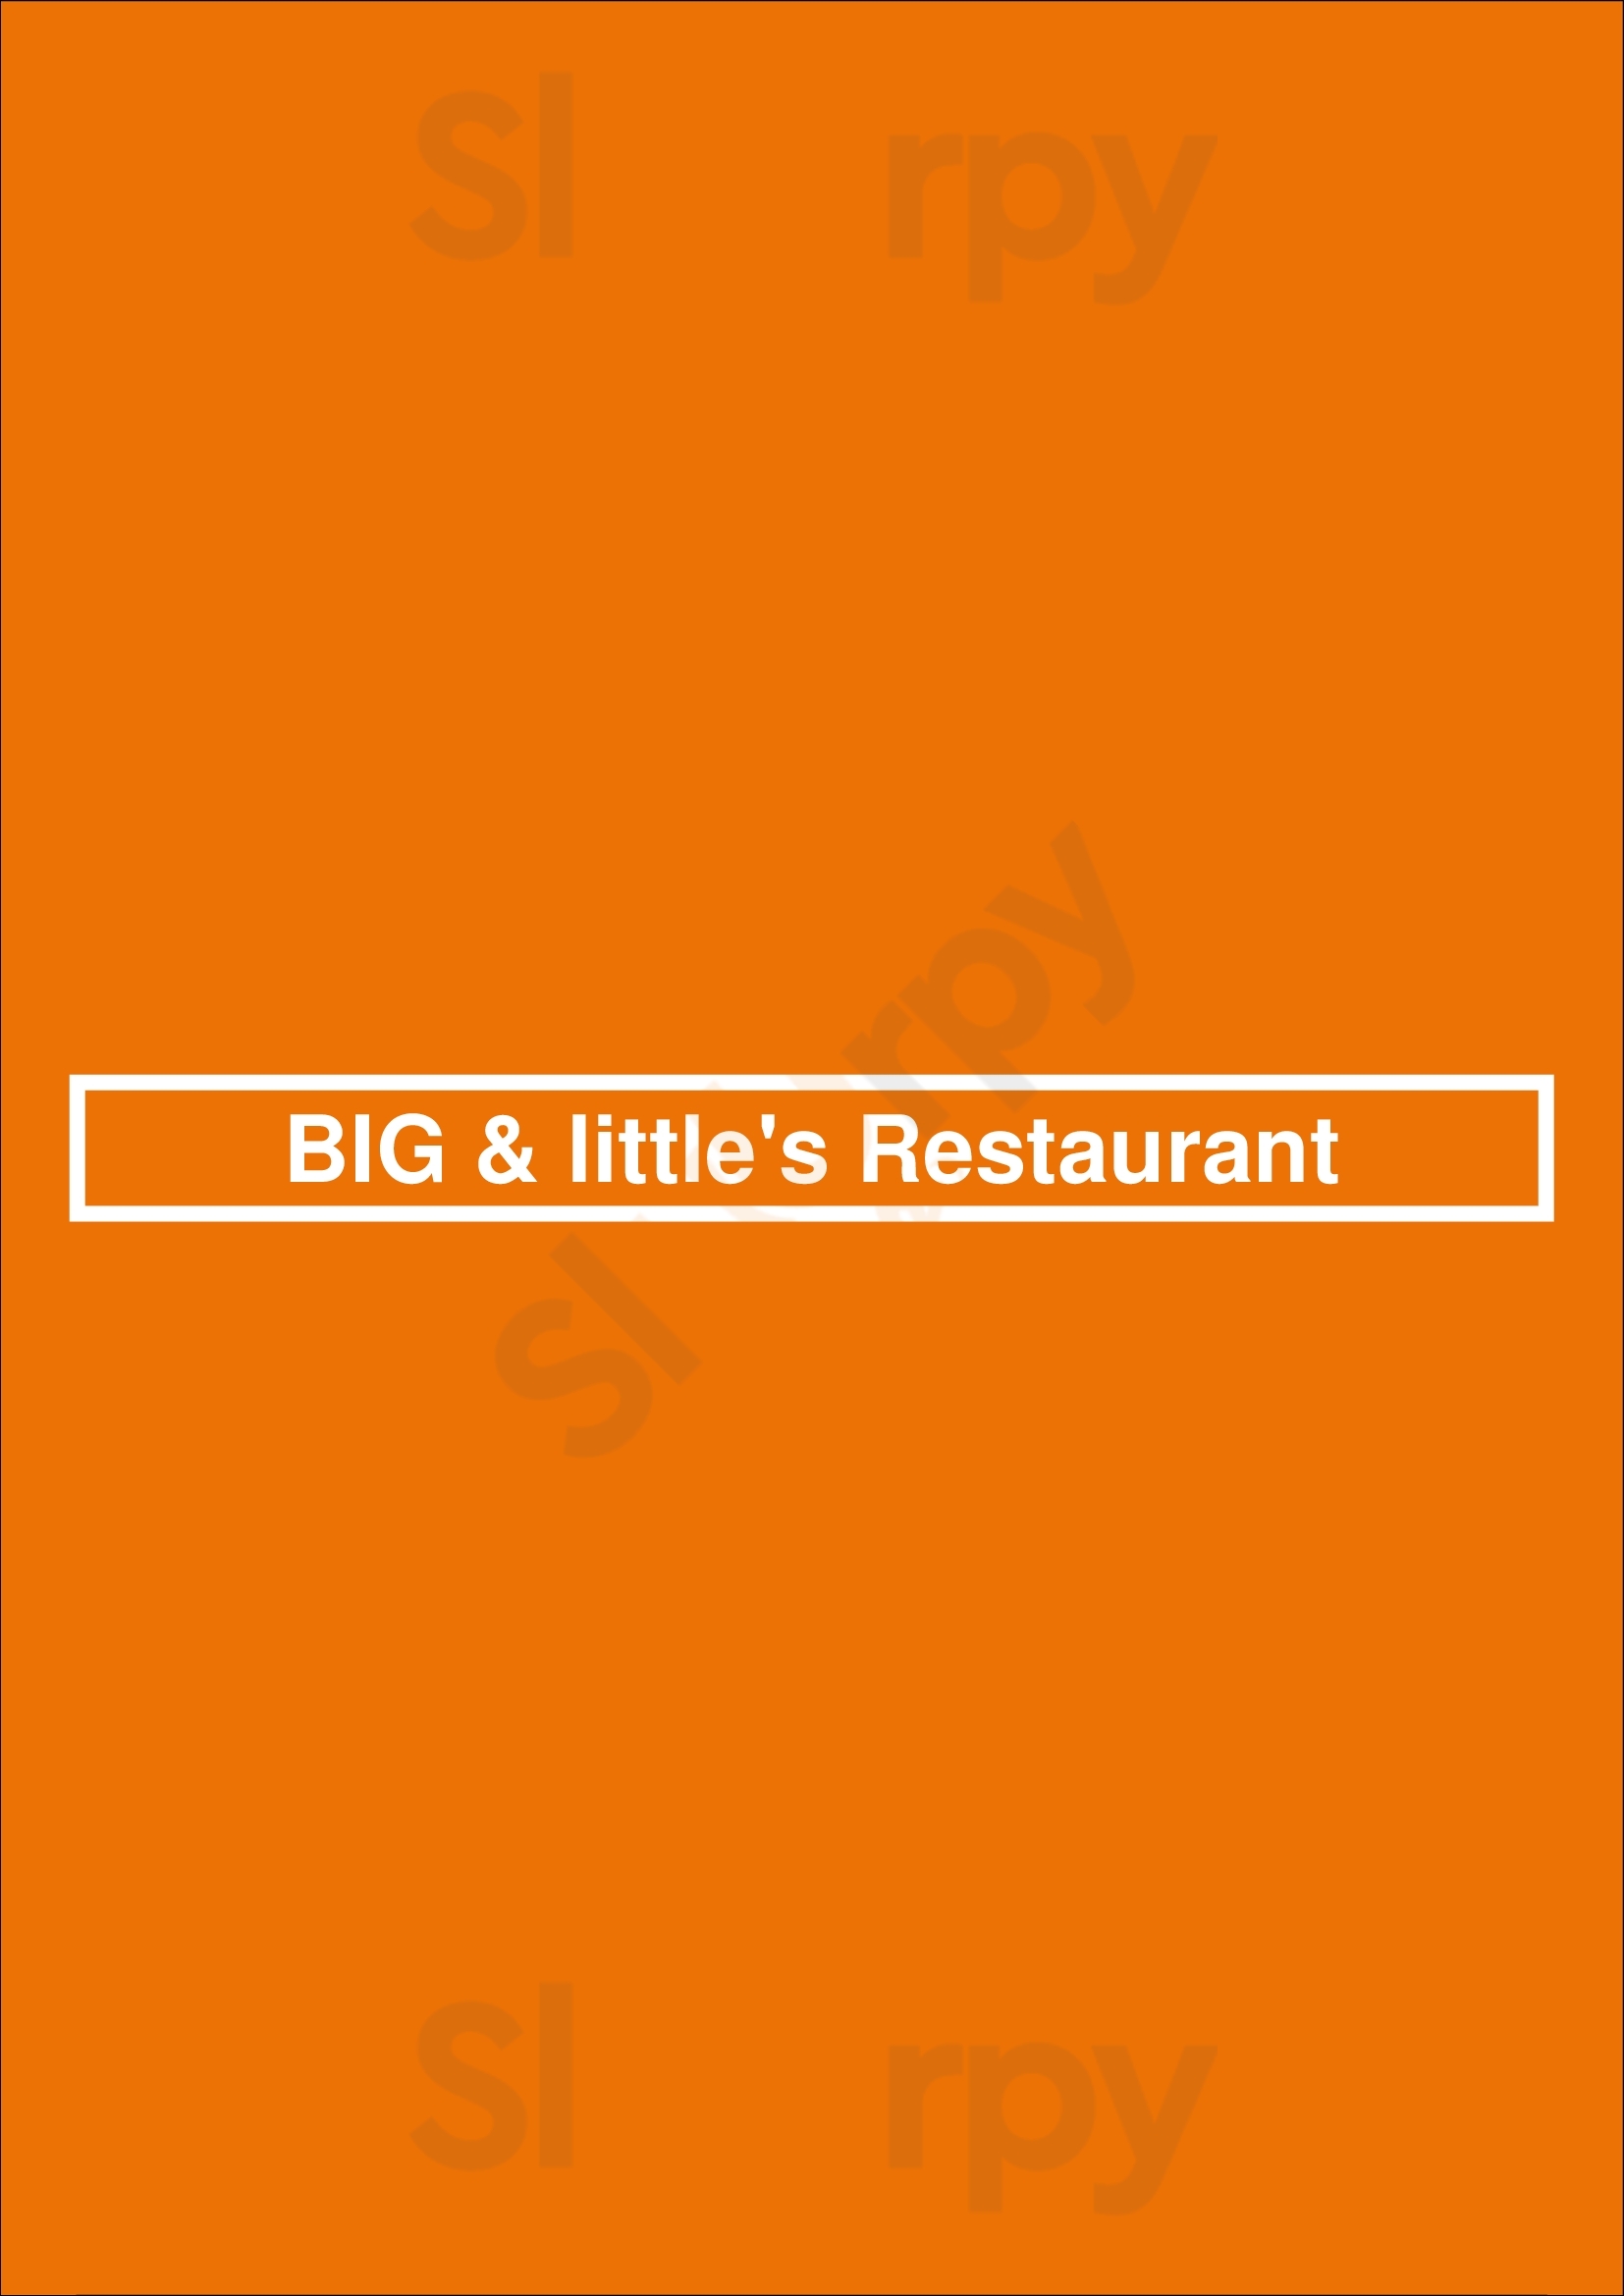 Big & Little's Restaurant Chicago Menu - 1